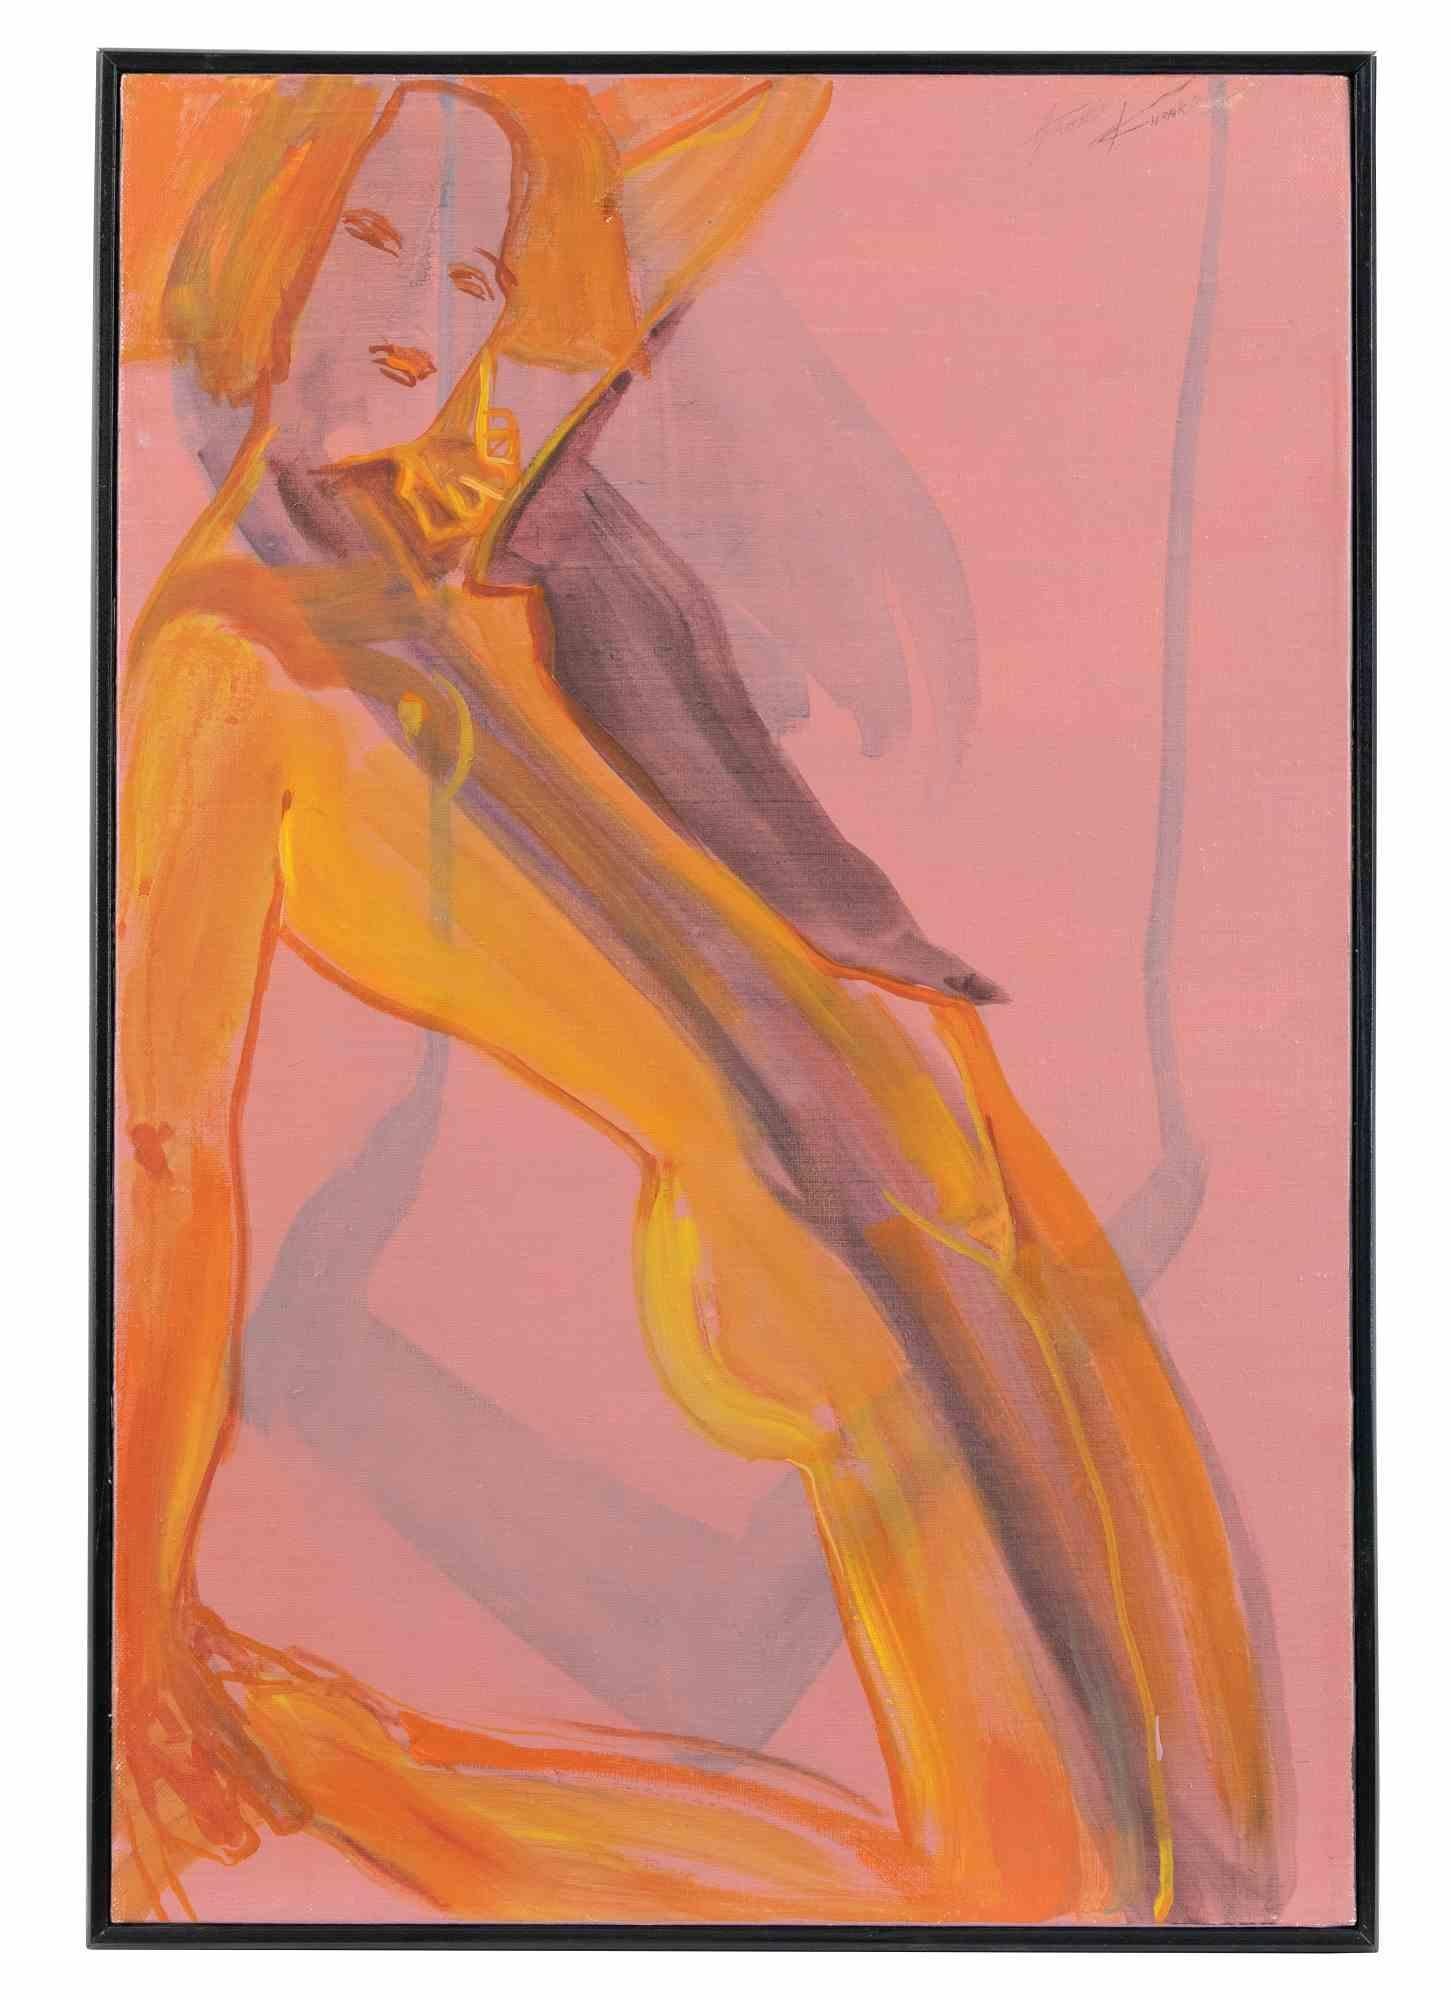 Nude Painting Anastasia Kurakina - Donnez-moi du jus !  - Huile sur toile d'Anatolie Kurakina - 2018